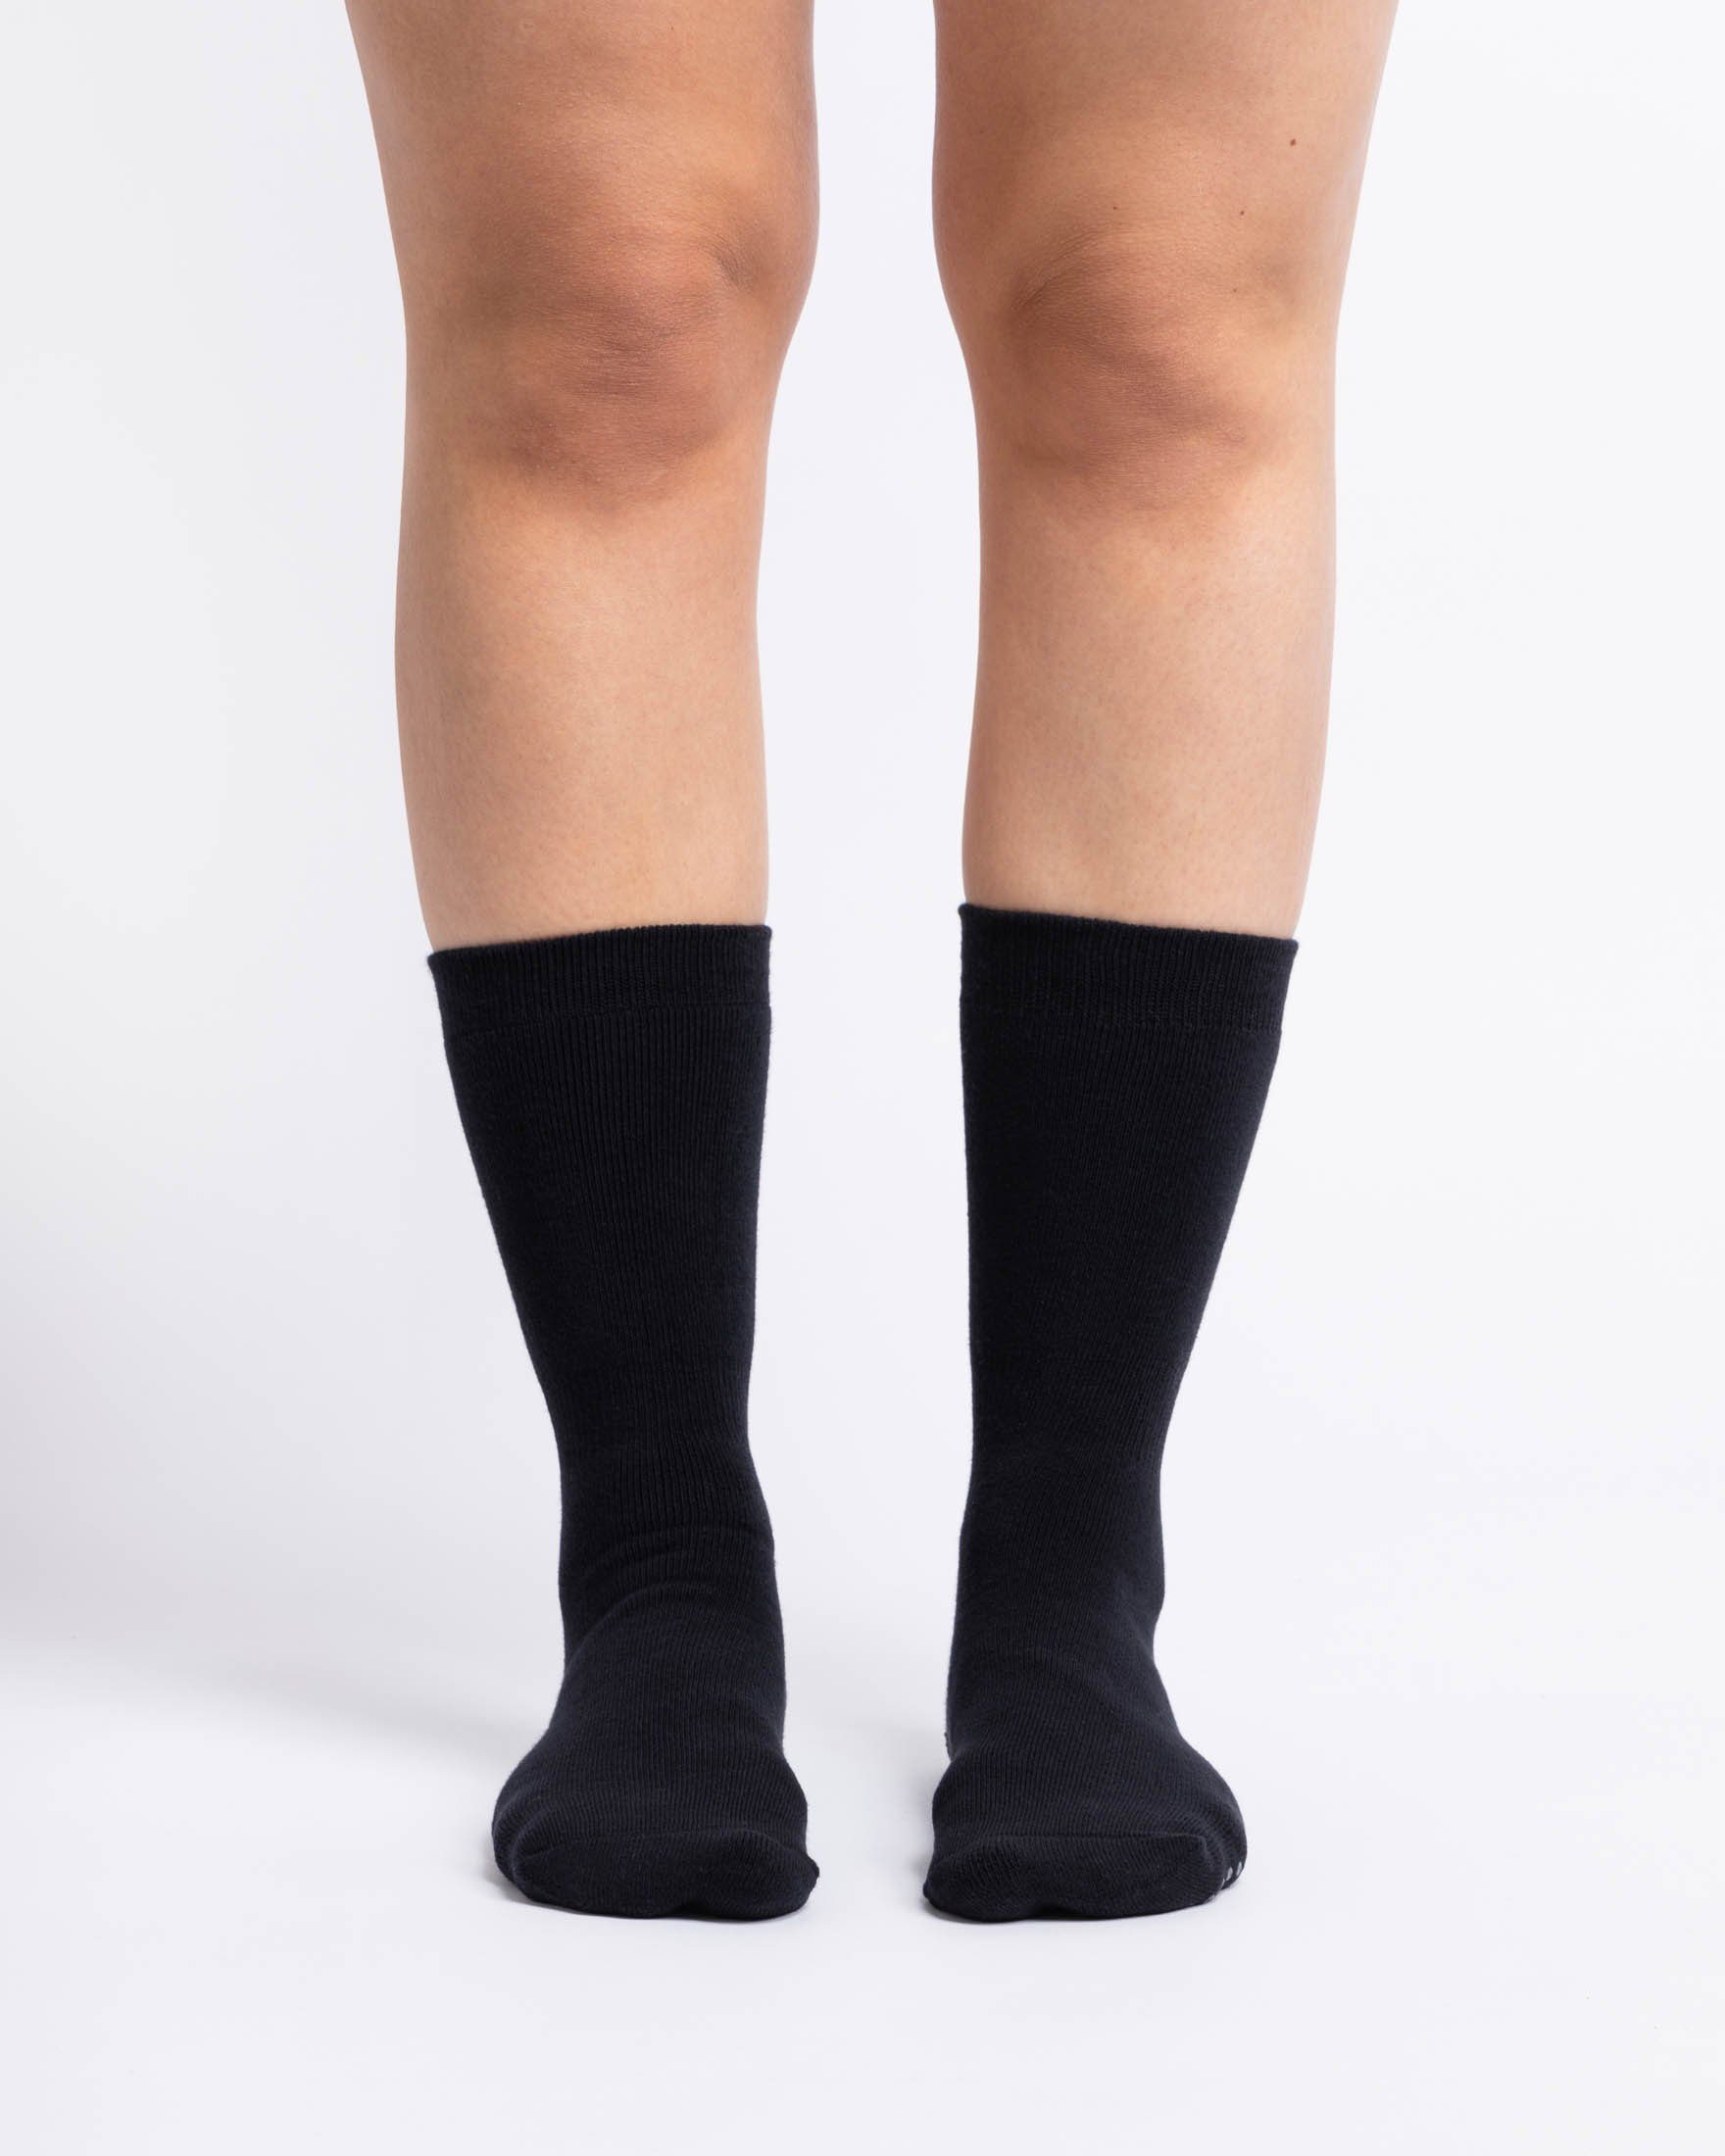 Wäsche/Bademode Socken SNOCKS ABS-Socken Anti-Rutsch Socken Damen & Herren ABS Socken (2-Paar) aus Bio-Baumwolle, Anti-Rutsch